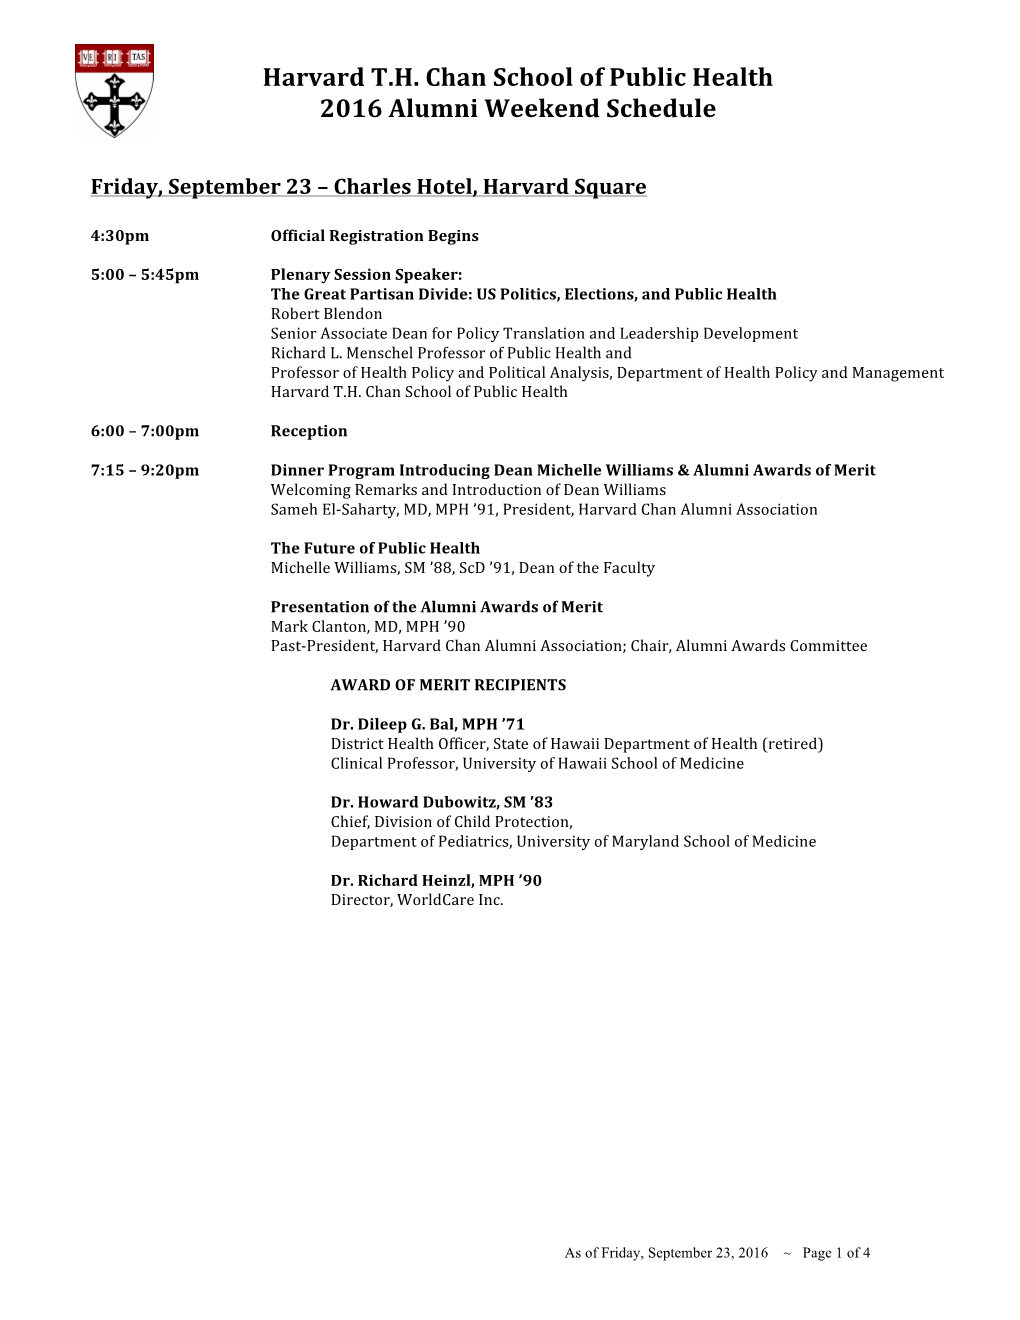 Harvard T.H. Chan School of Public Health 2016 Alumni Weekend Schedule